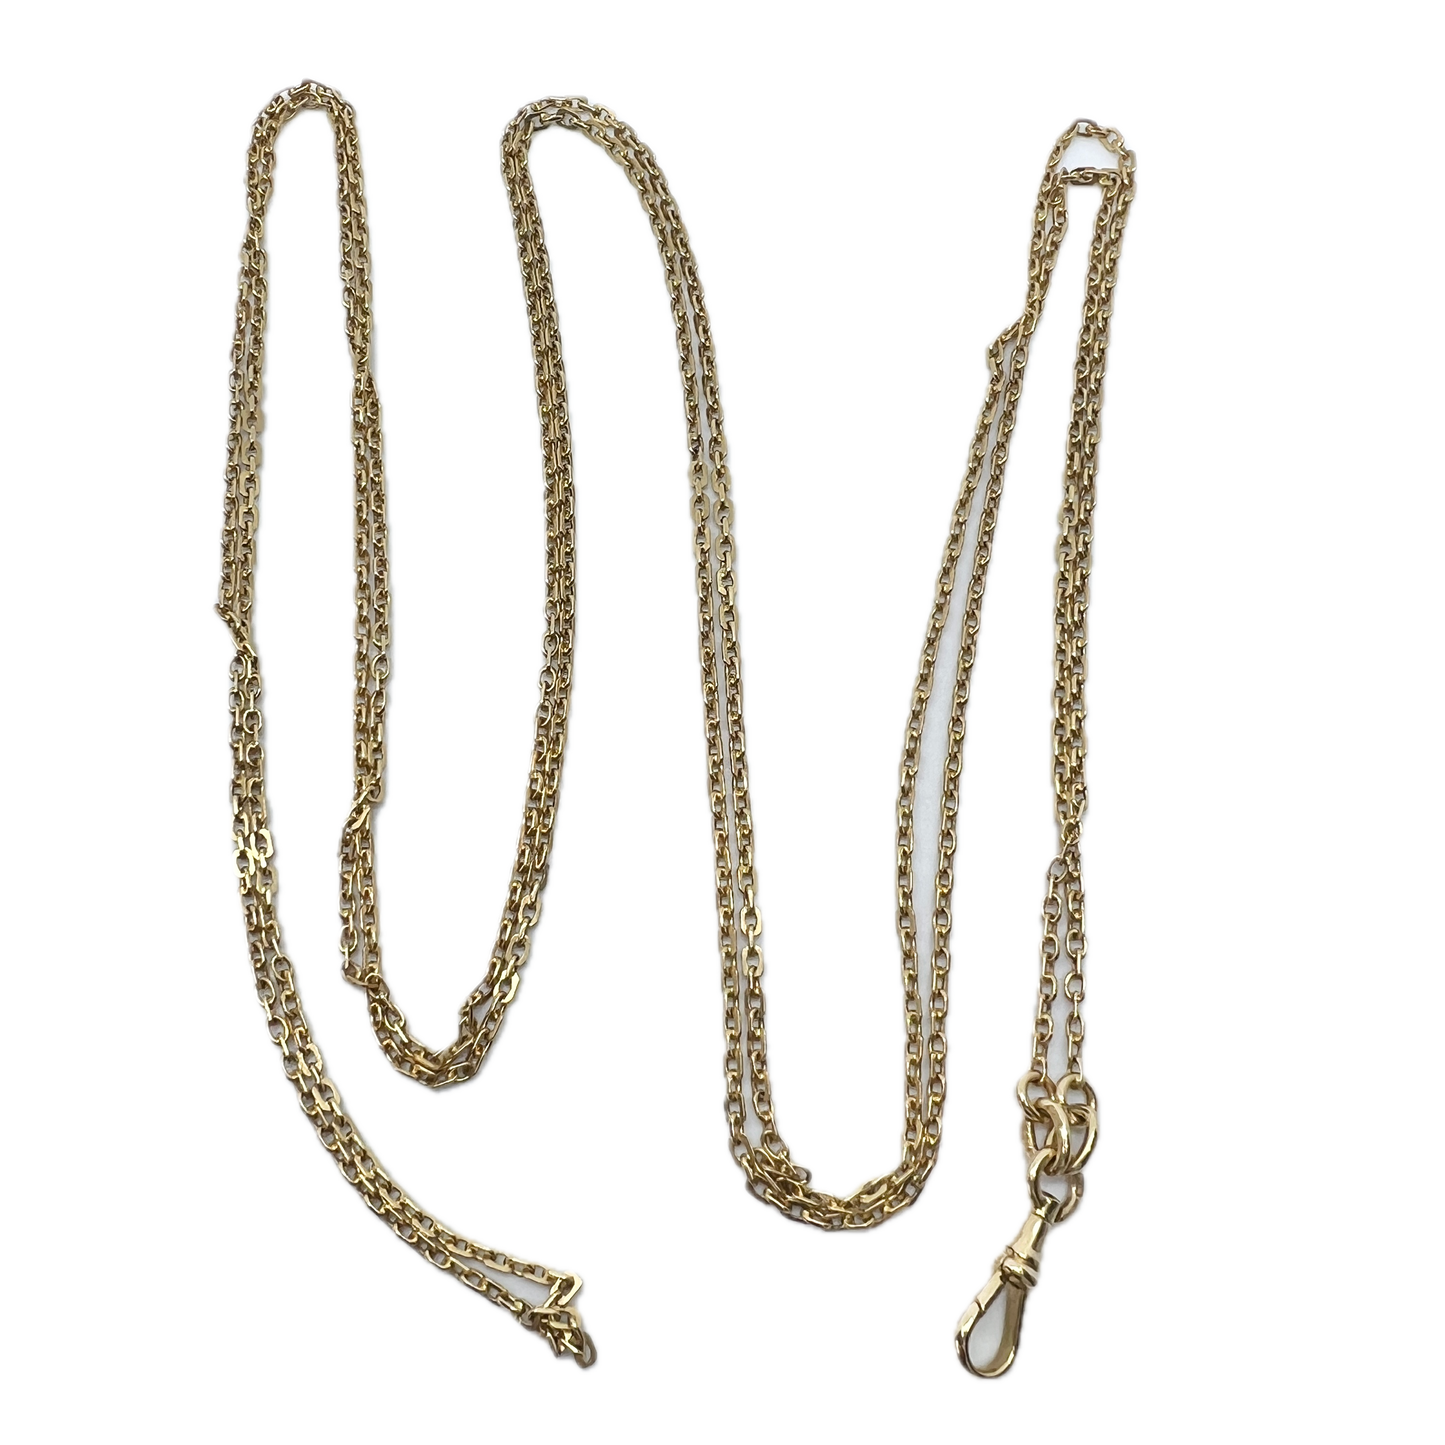 Karl Andersson, Stockholm Sweden c 1900. Antique 18k Gold Longuard Chain Necklace.